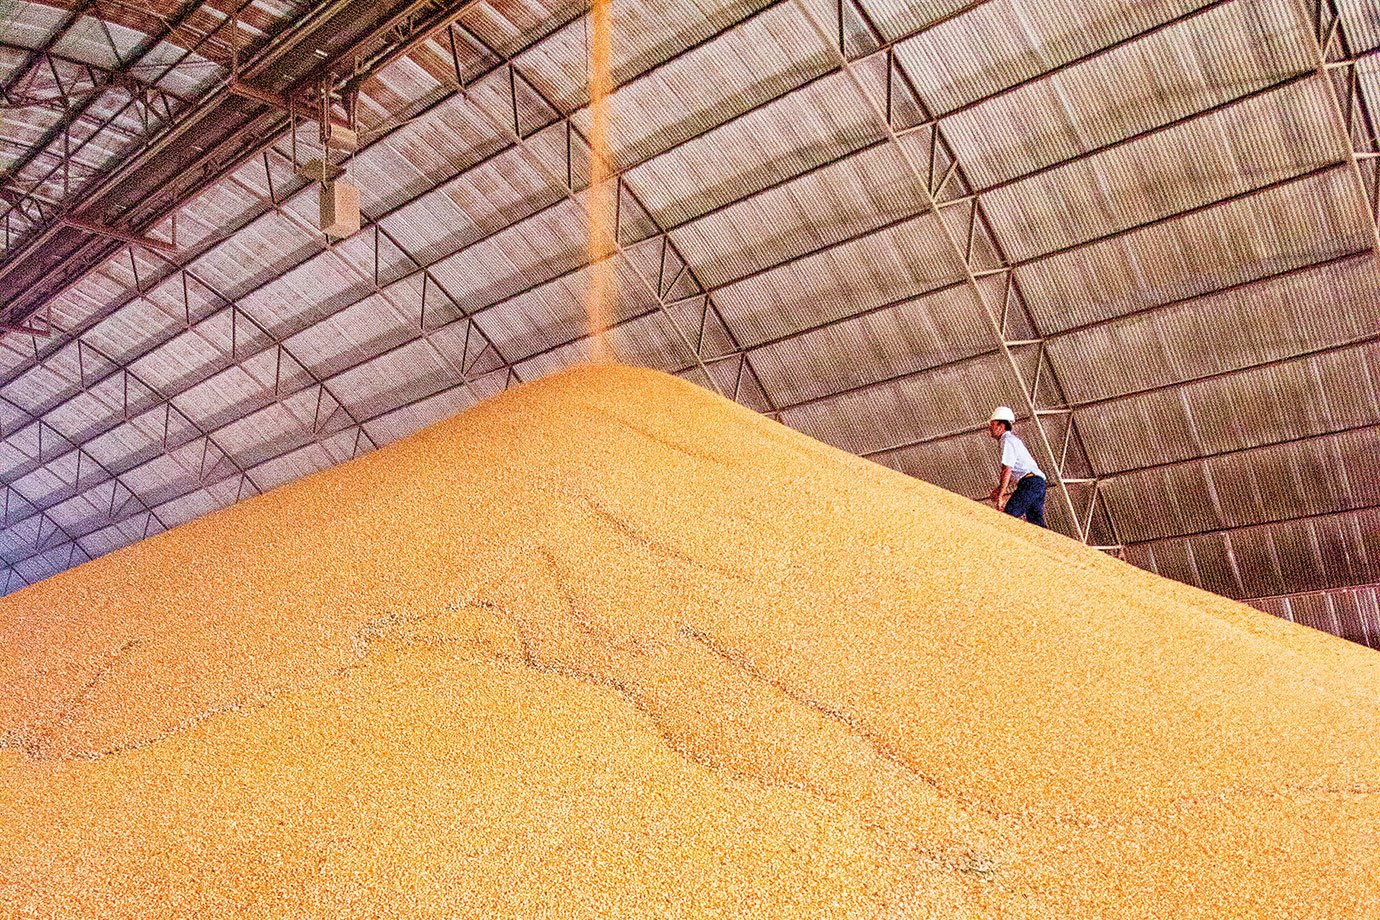 As 6 principais commodities agrícolas que o Brasil exporta